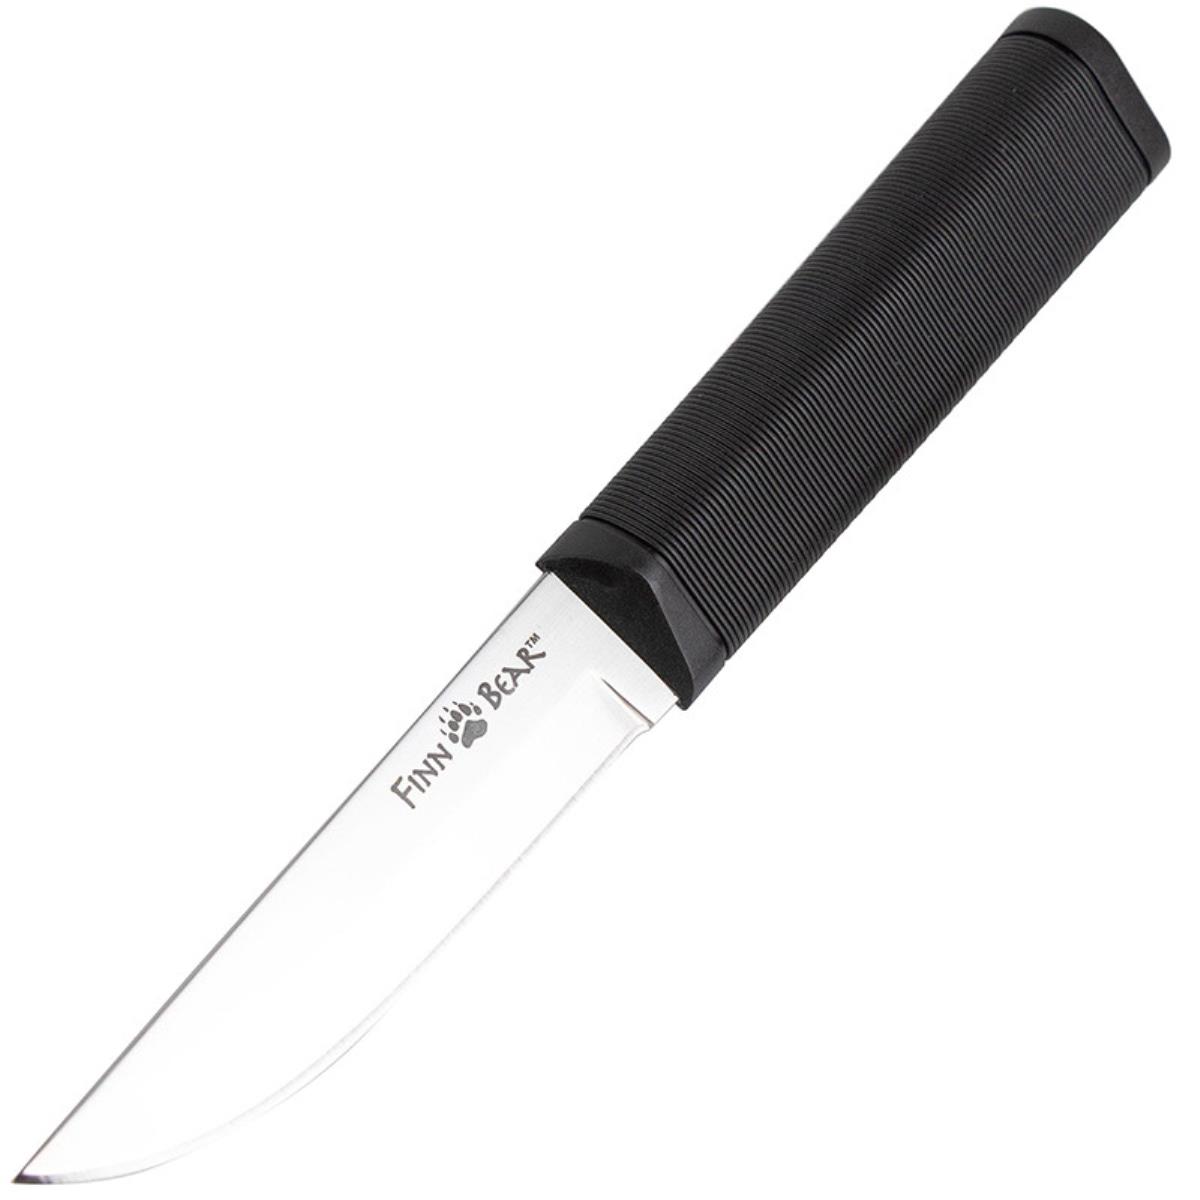 Нож сталь 4116 German, пластиковые ножны 20PC Finn Bear  Cold Steel нож cold steel outdoorsman lite 20ph сталь 4116 рукоять резина